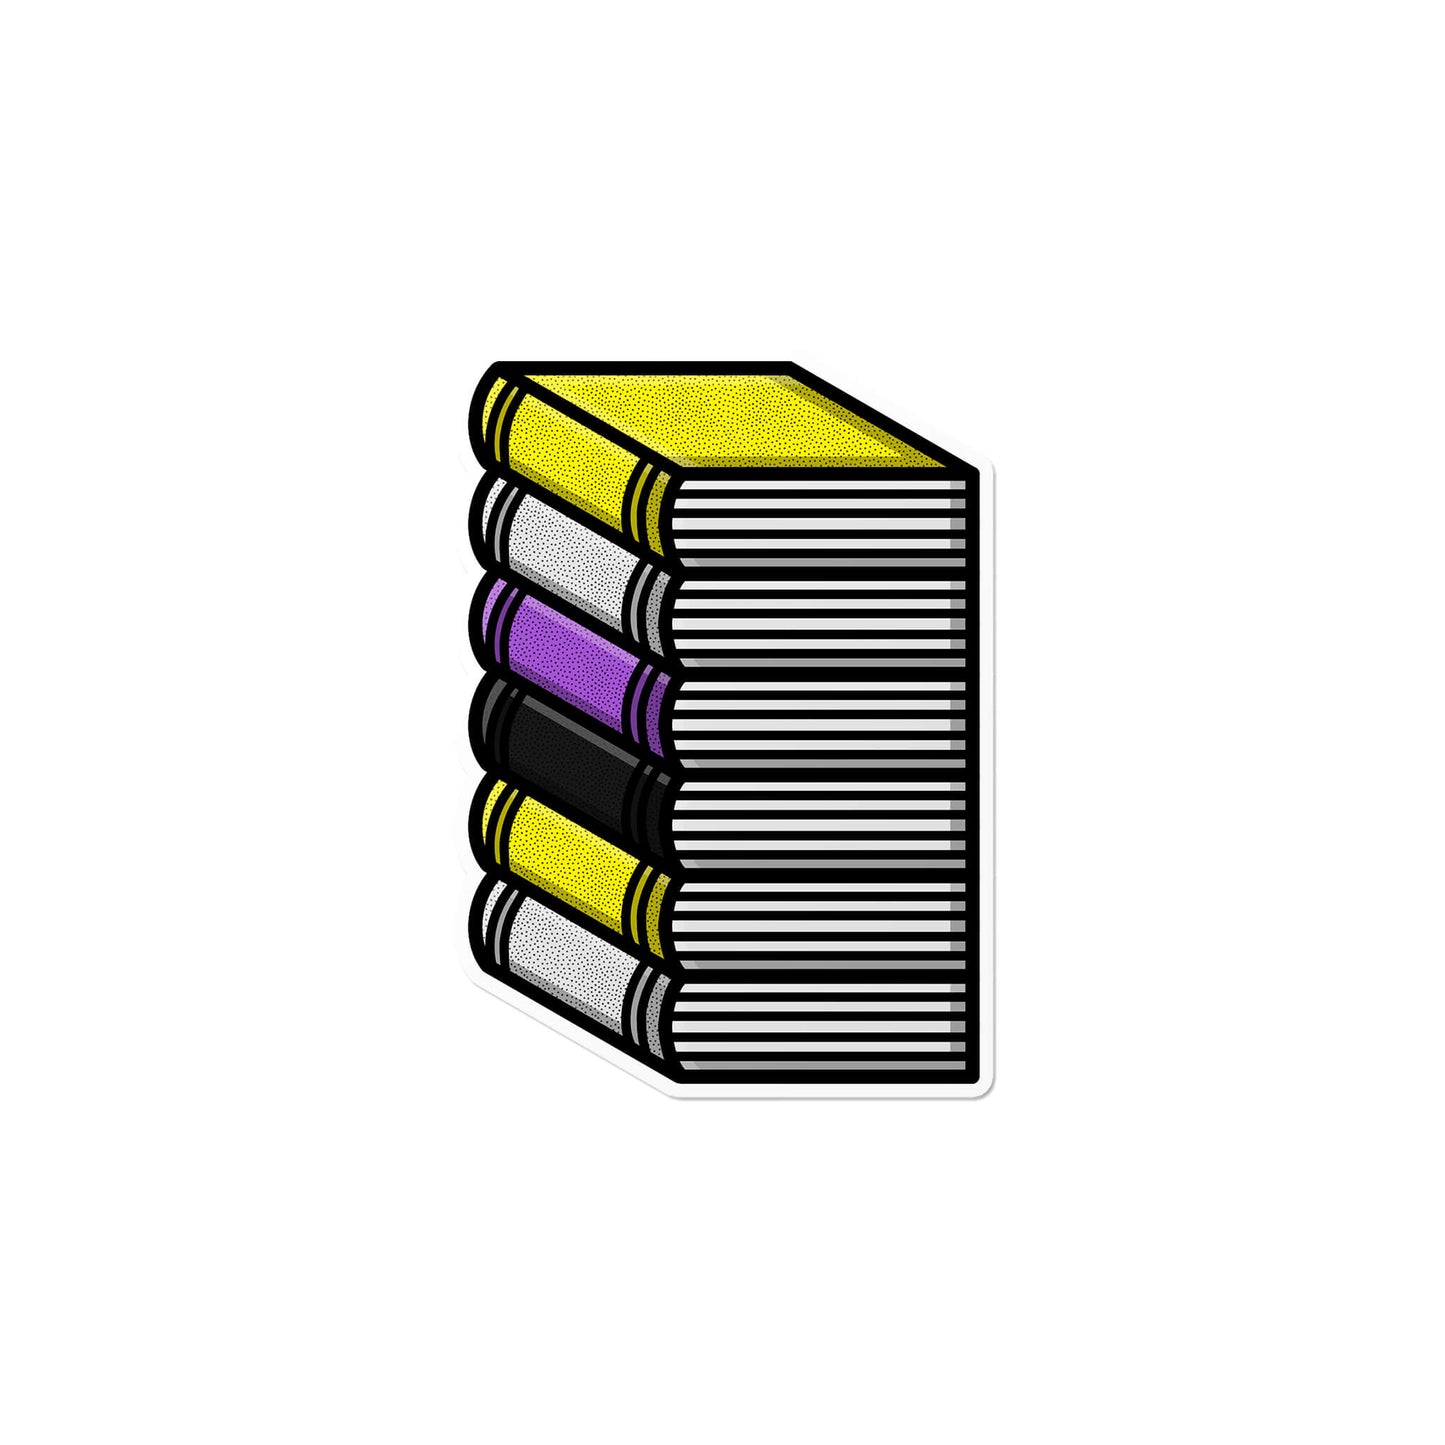 Nonbinary Pile of Books Sticker